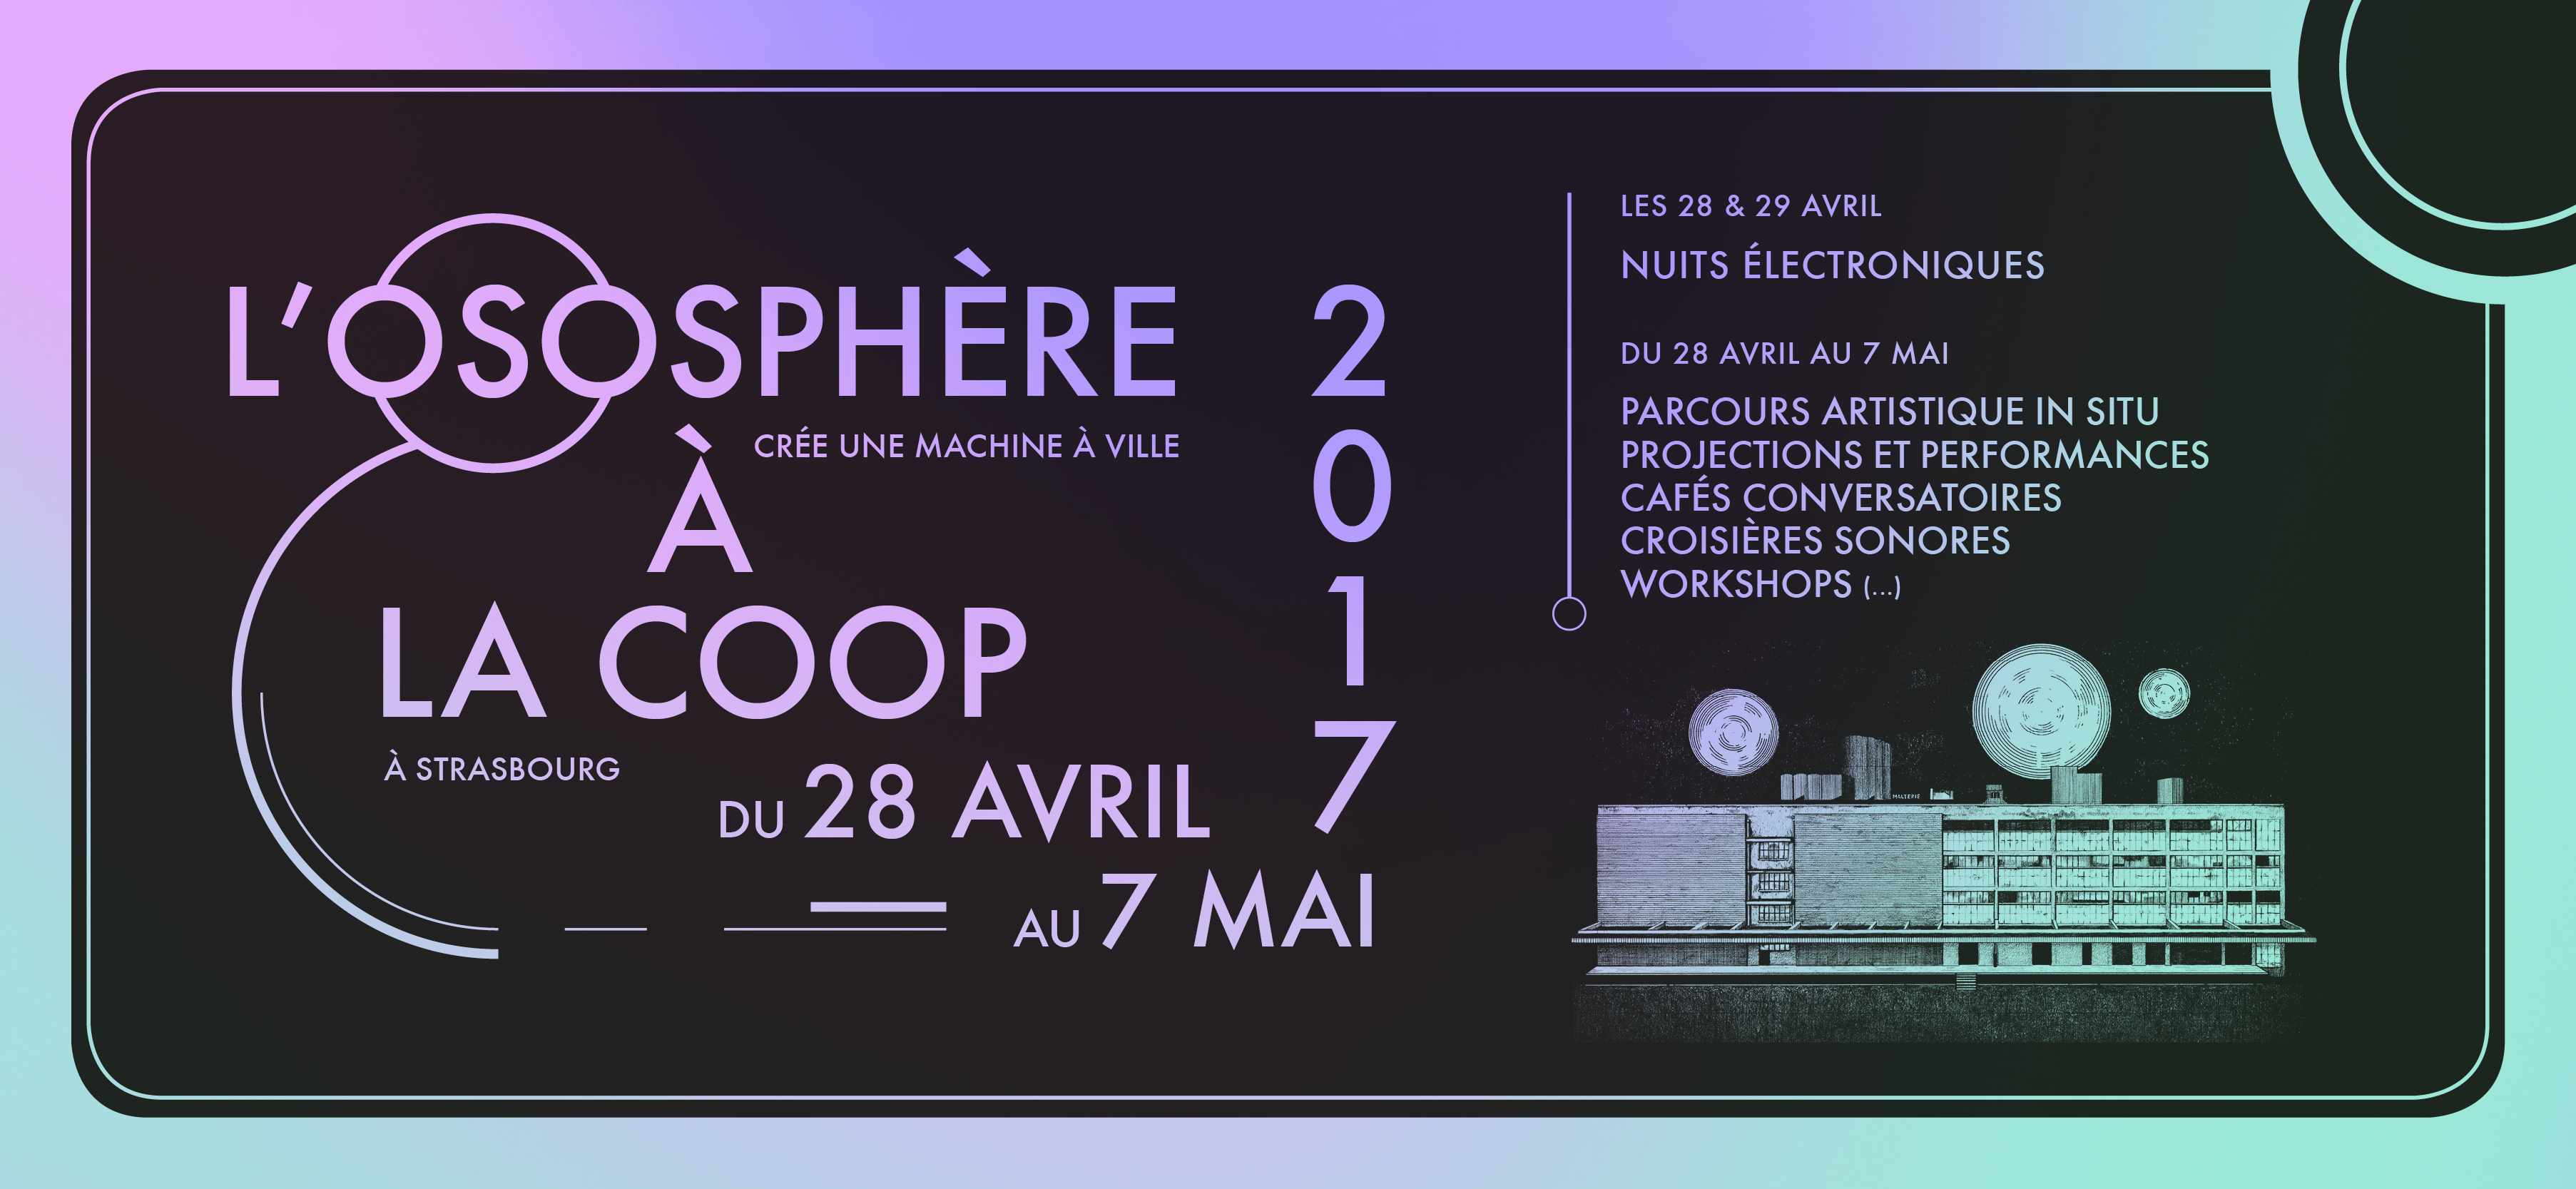 Festival OSOSPHÈRE : propose un parcours artistique monumental et immersif, du 28 avril au 7 mai, à Strasbourg